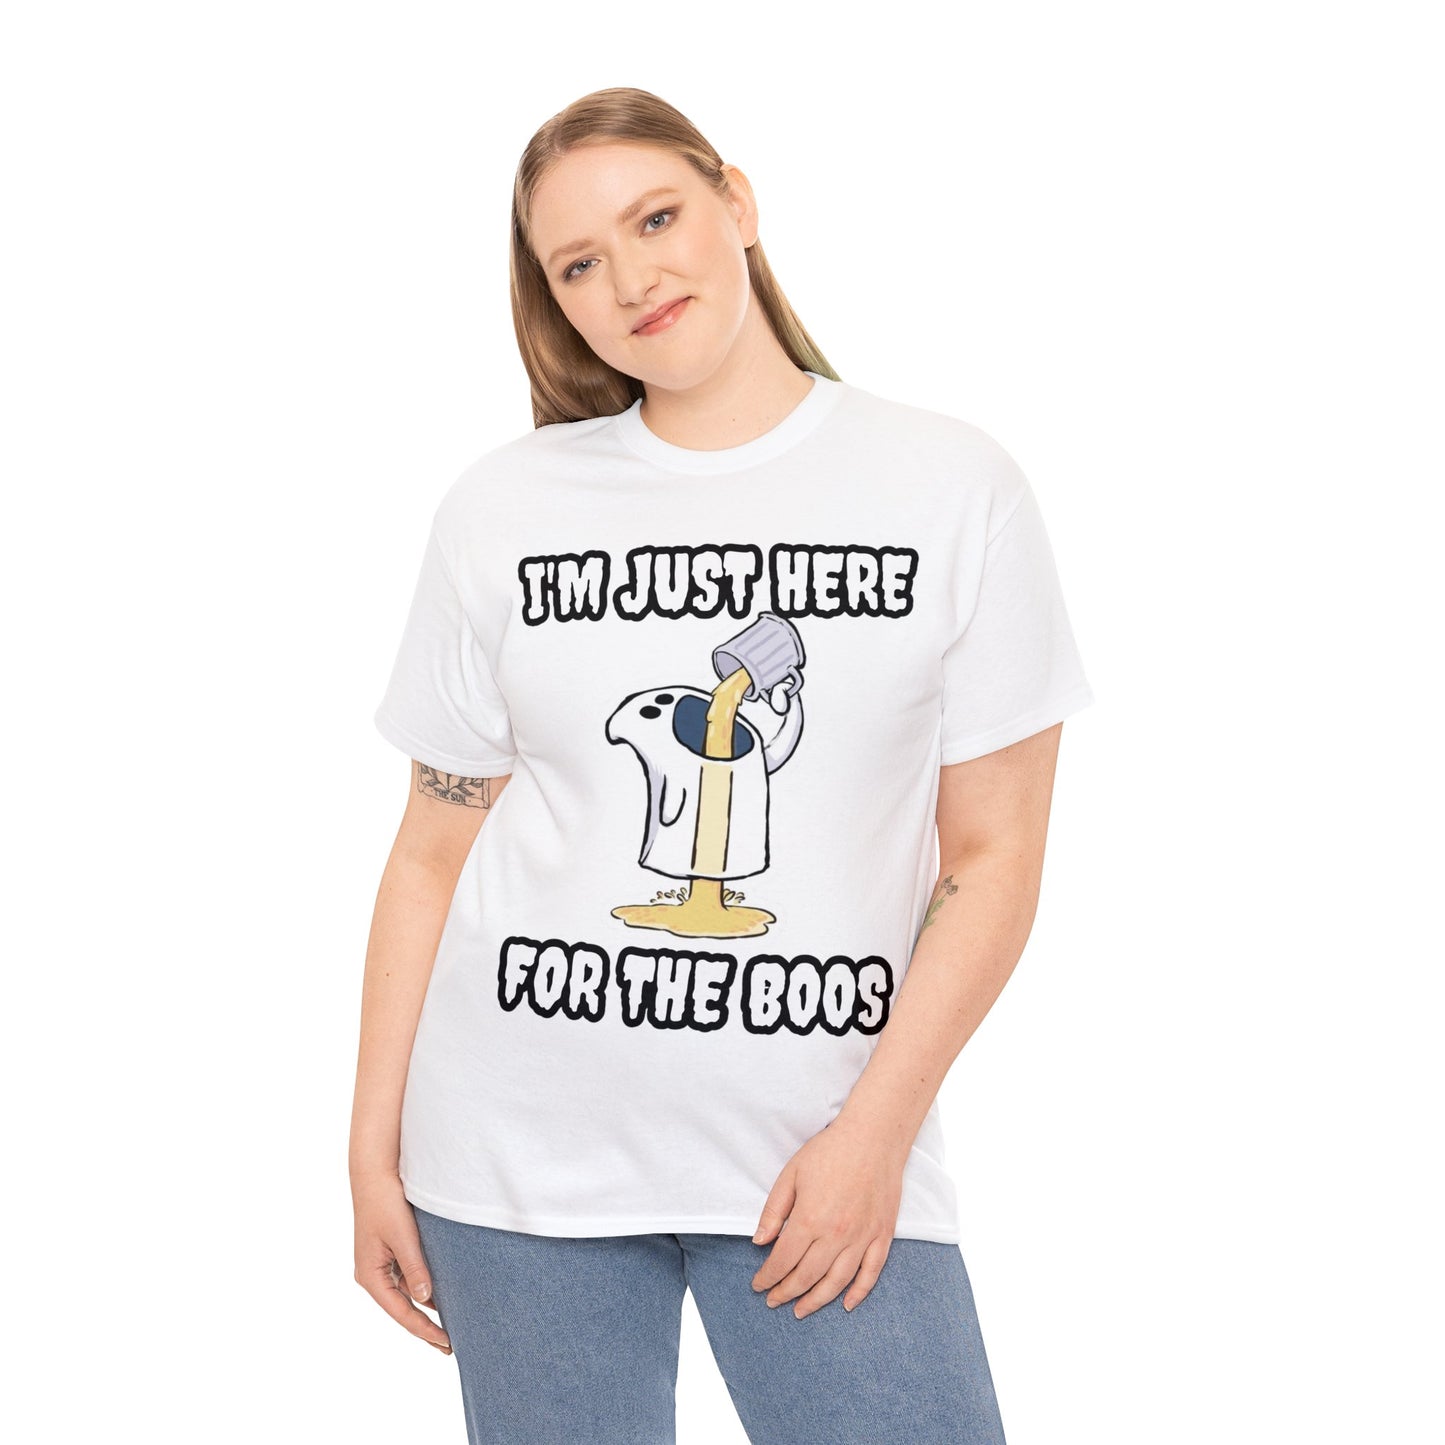 Boo-ze Chaser T-Shirt